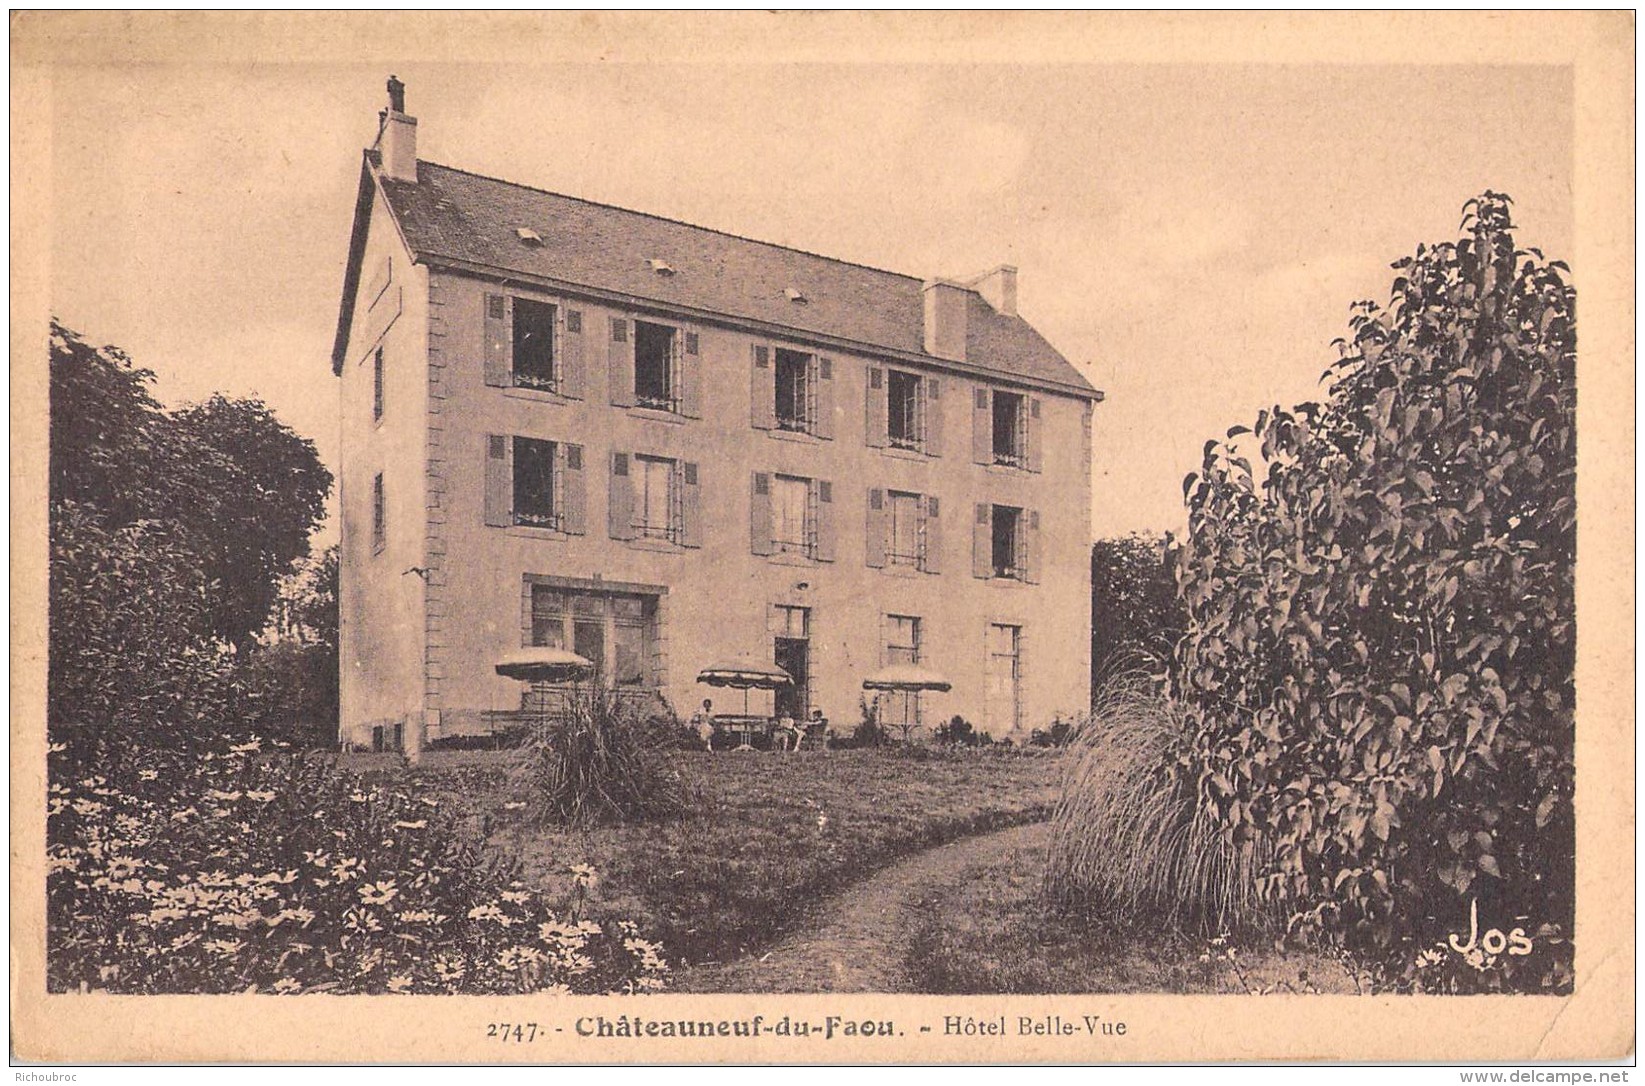 29 RARE CHATEAUNEUF DU FAOU HOTEL BELLE VUE / BELLEVUE / 2747 LE DOARE - Châteauneuf-du-Faou